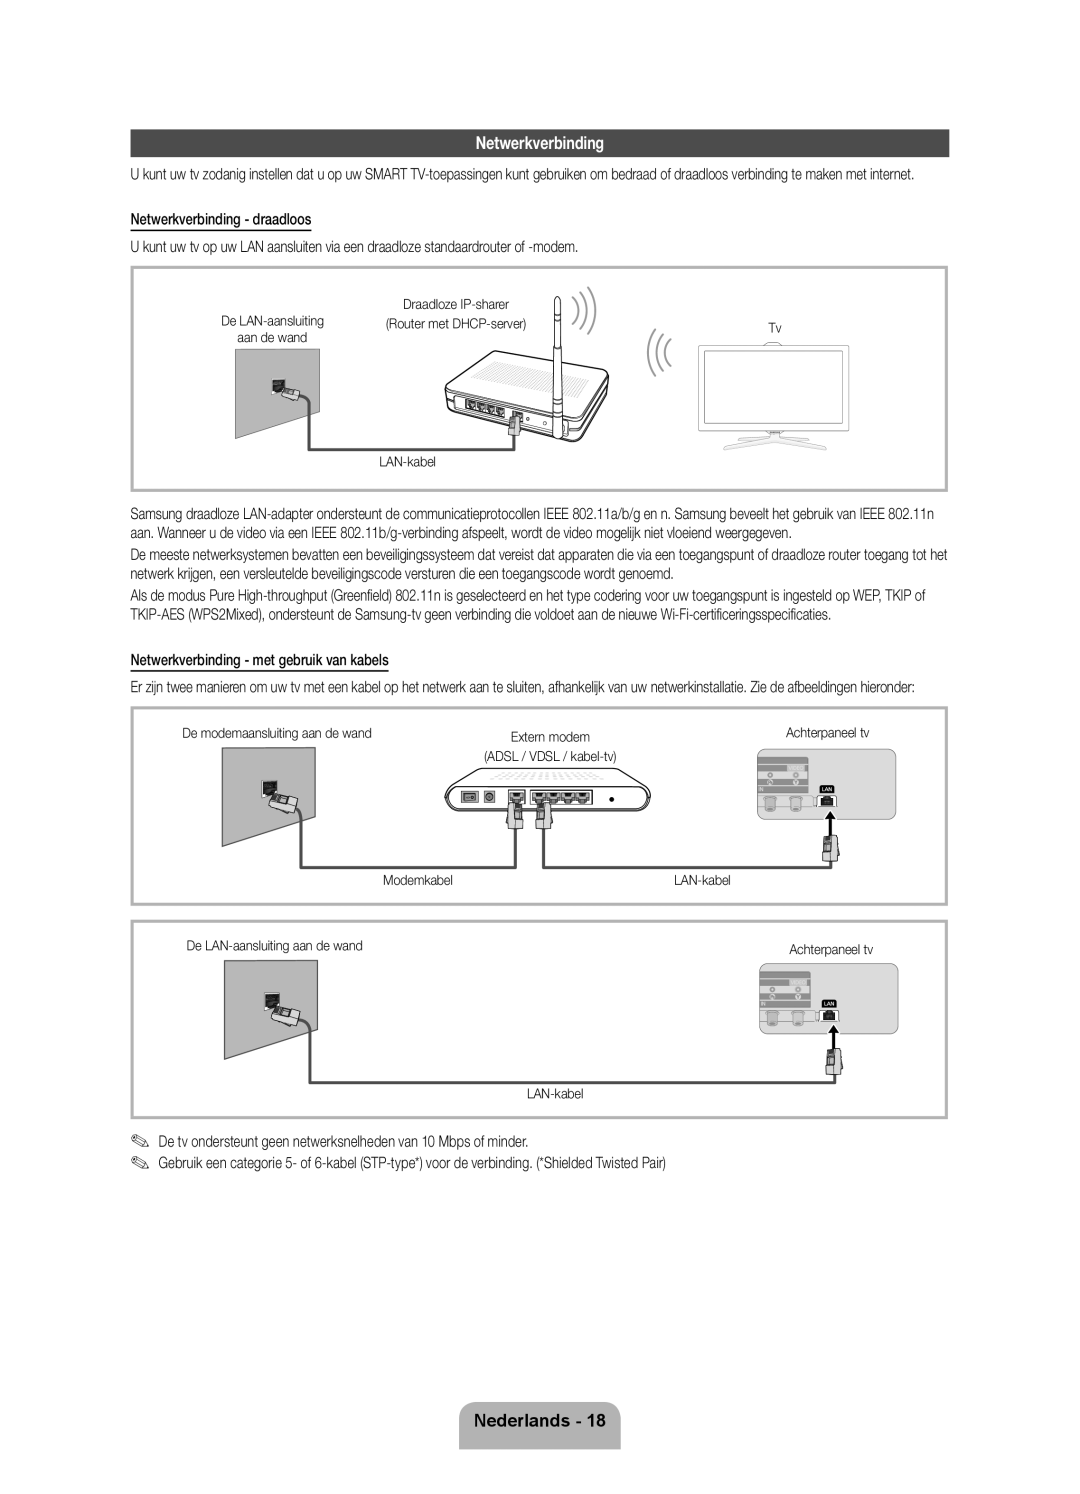 Samsung UE55ES7000SXXH manual Nederlands, Netwerkverbinding - draadloos, Netwerkverbinding - met gebruik van kabels 